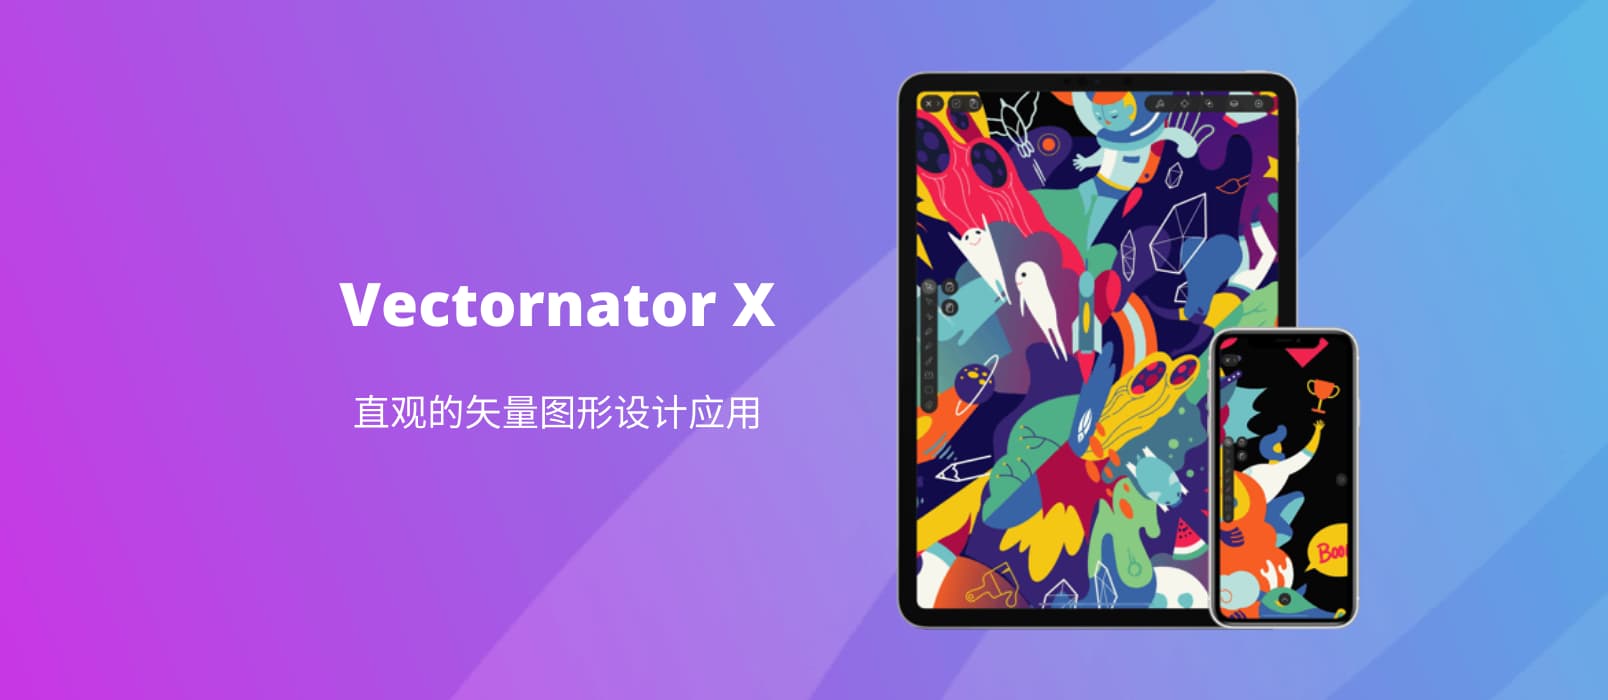 矢量图形设计应用 Vectornator X 限免[iOS] 1